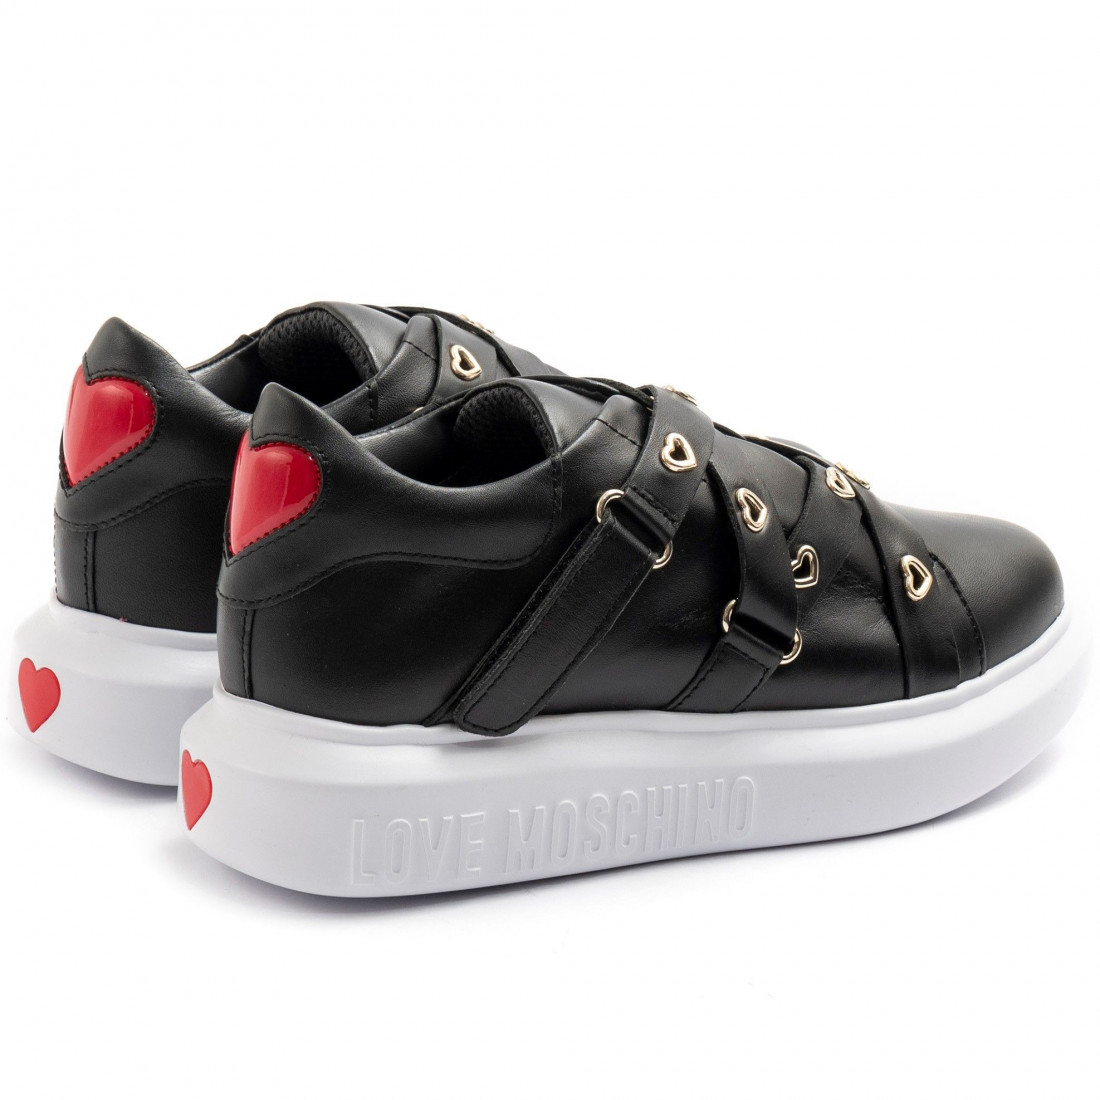 Sneaker Love Moschino nere con listini e cuori